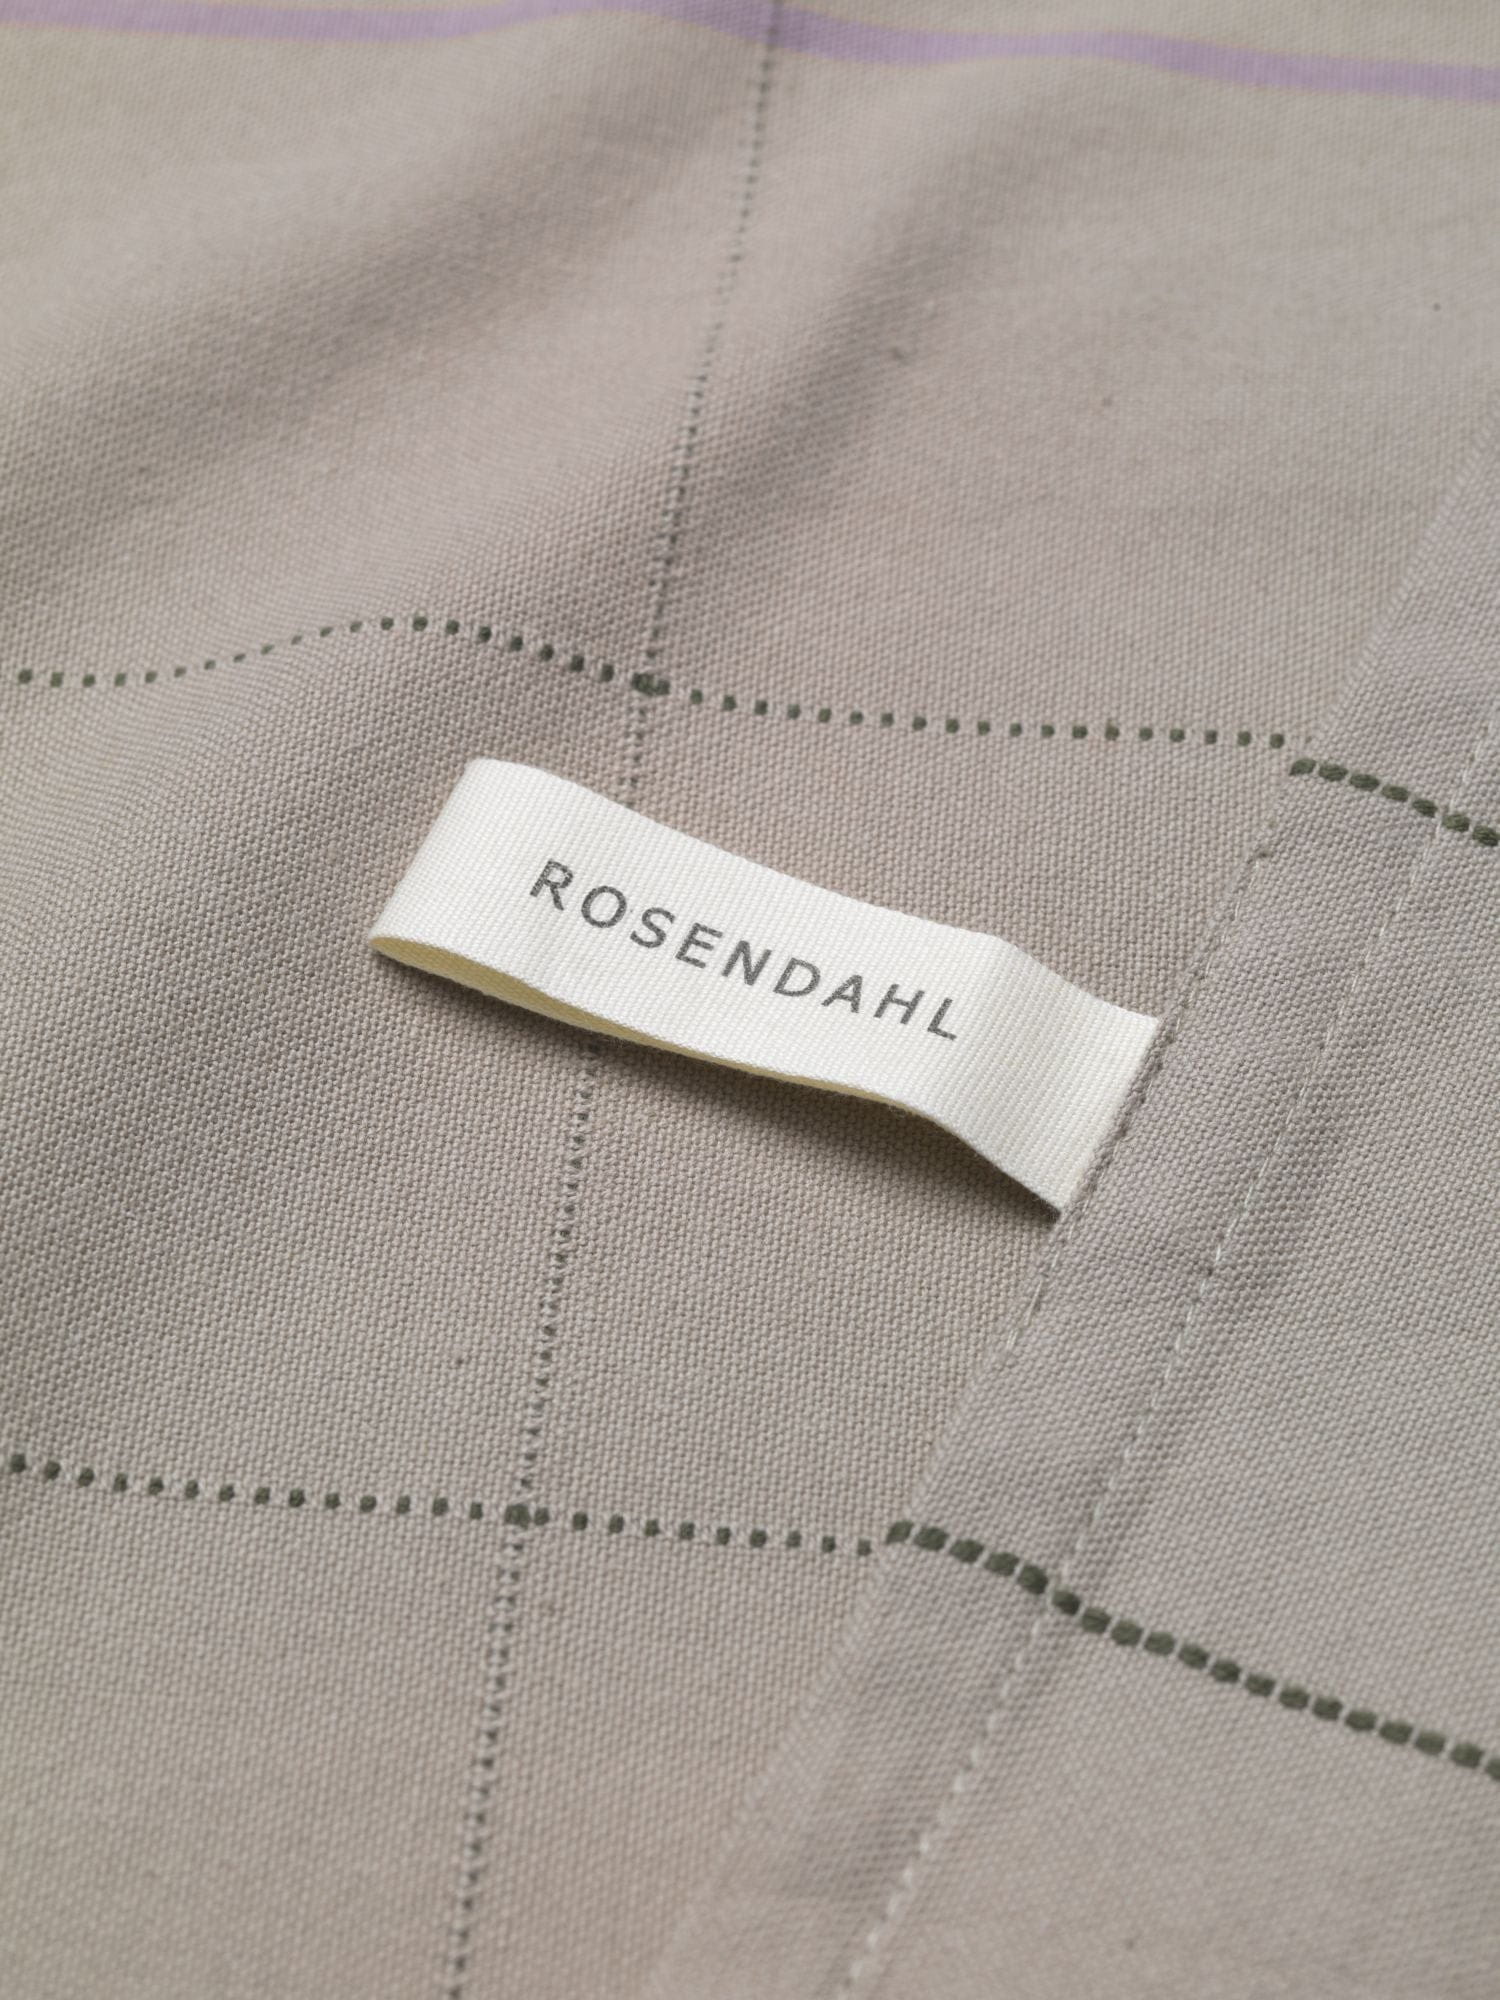 Rosendahl Rosendahl Textiles Gamma To taquel de té 50x70 cm, arena